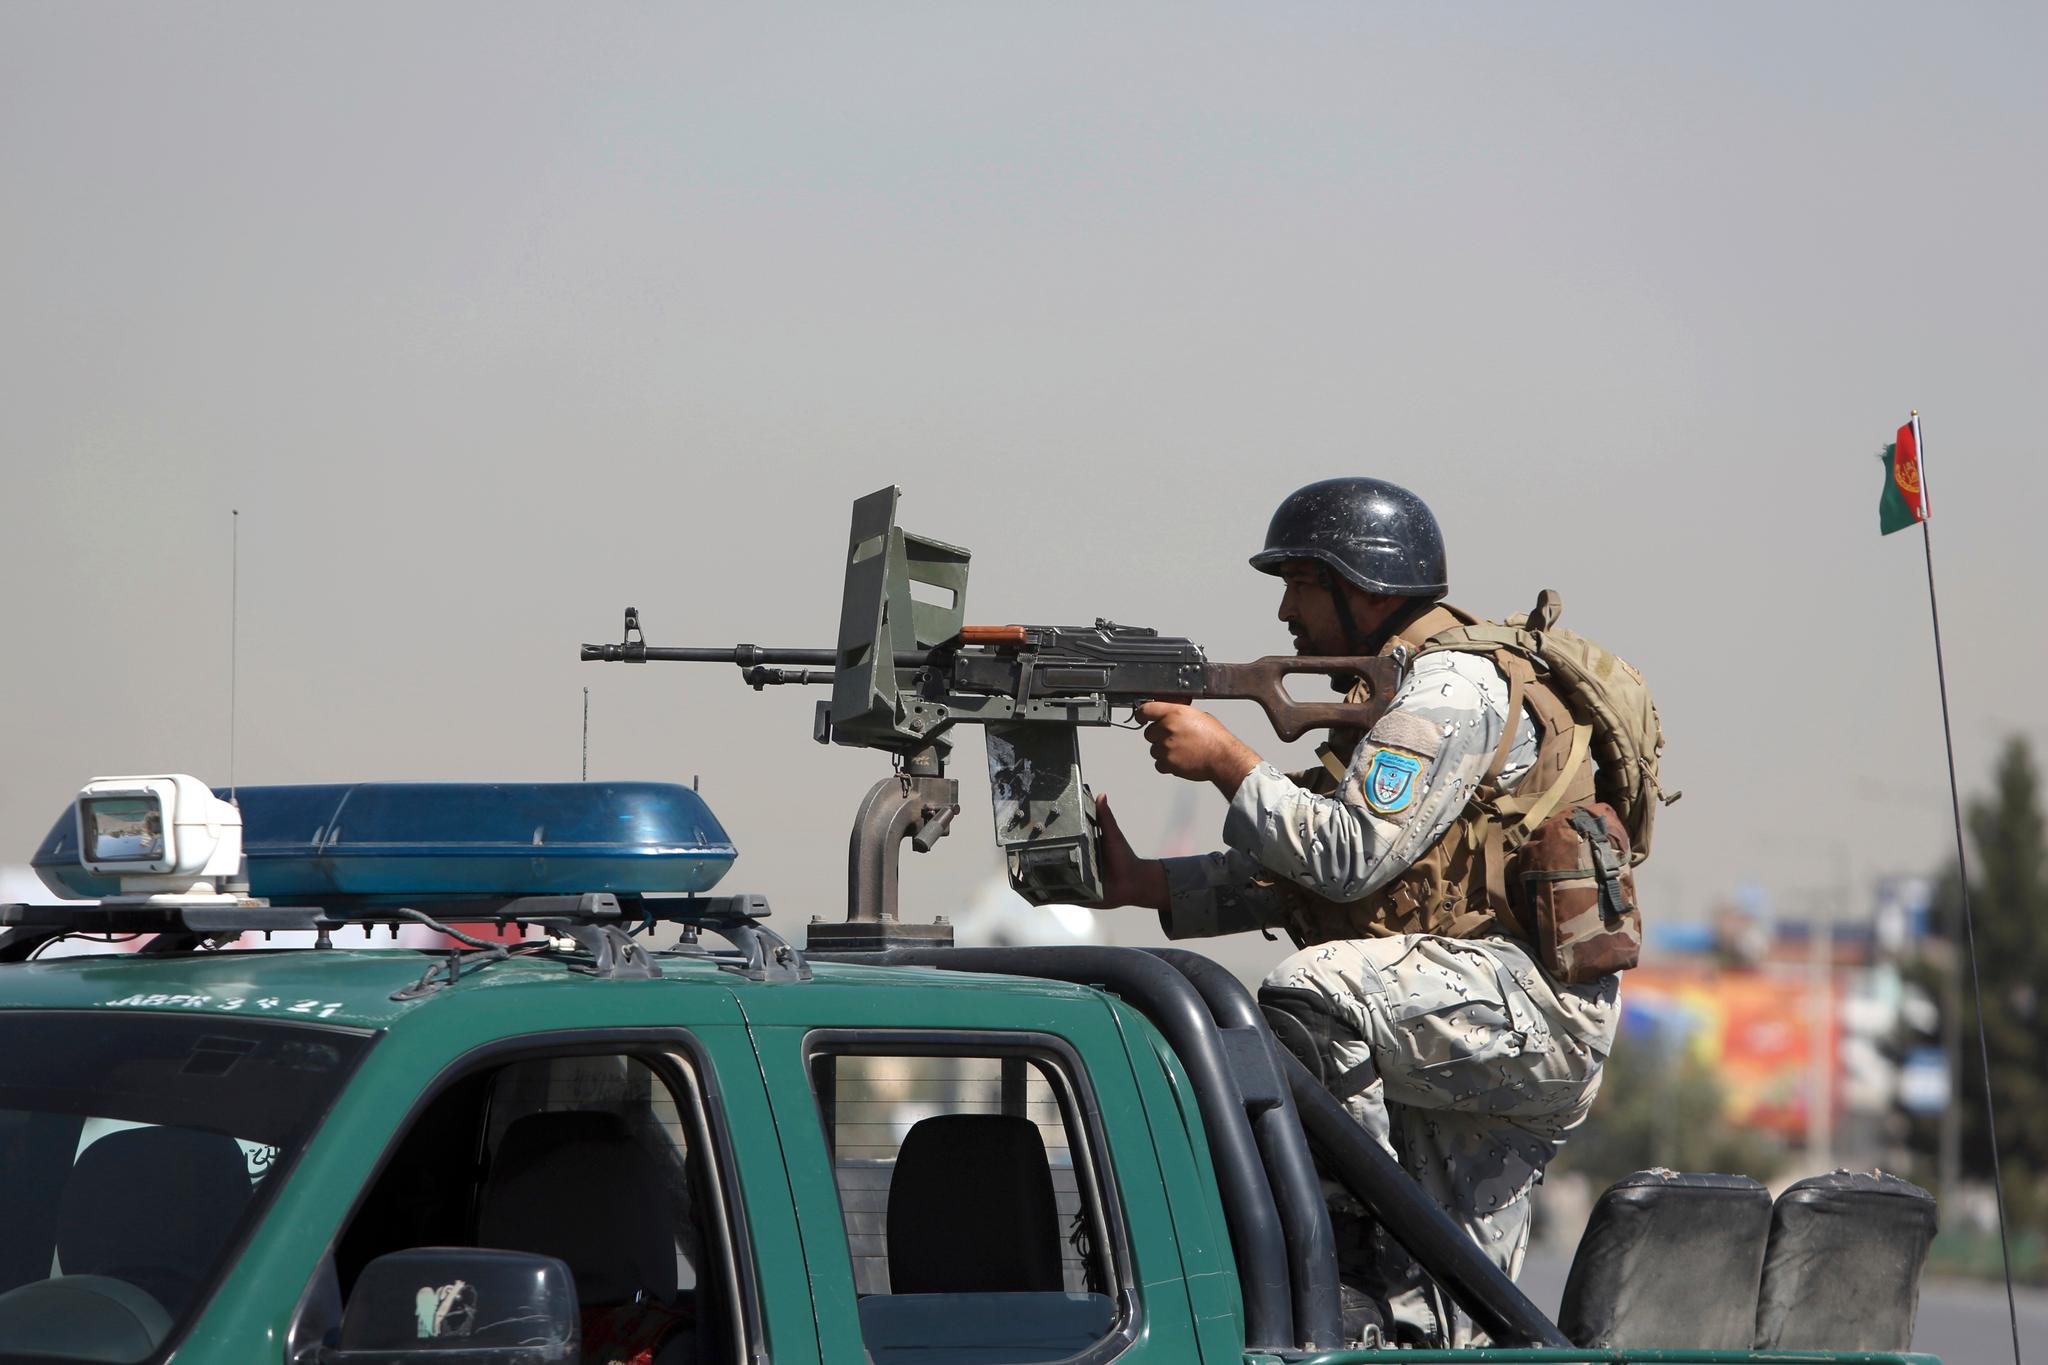 En afghansk sikkerhetstjenestemann bemanner et maskingevær under en trefning i Kabul 21. august. Myndighetene sier Taliban skjøt mot presidentpalasset. Senere hevdet IS at de sto bak.